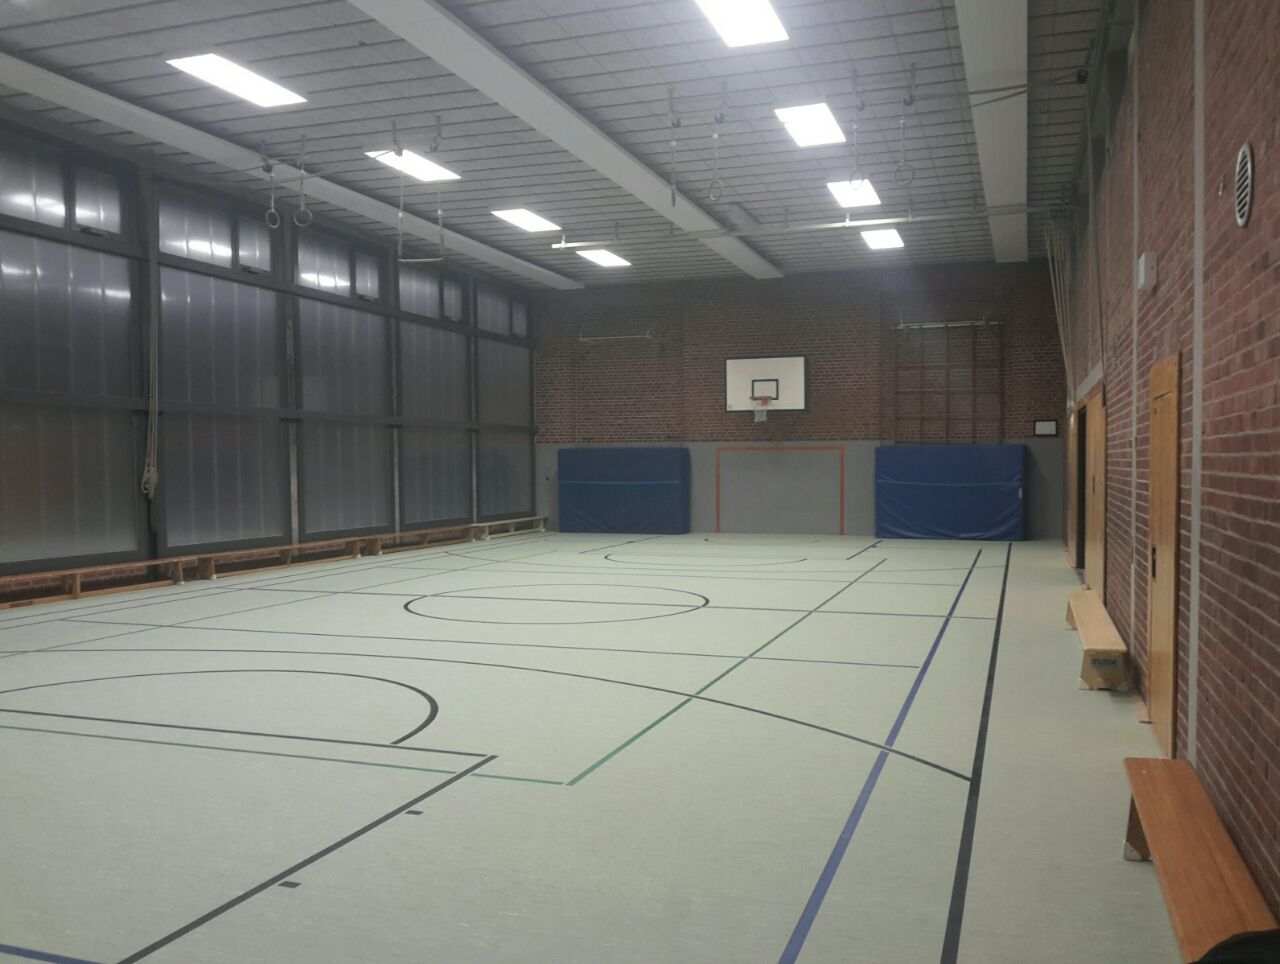 Halle Feldstraße renoviert und wieder offen für den Vereinssport